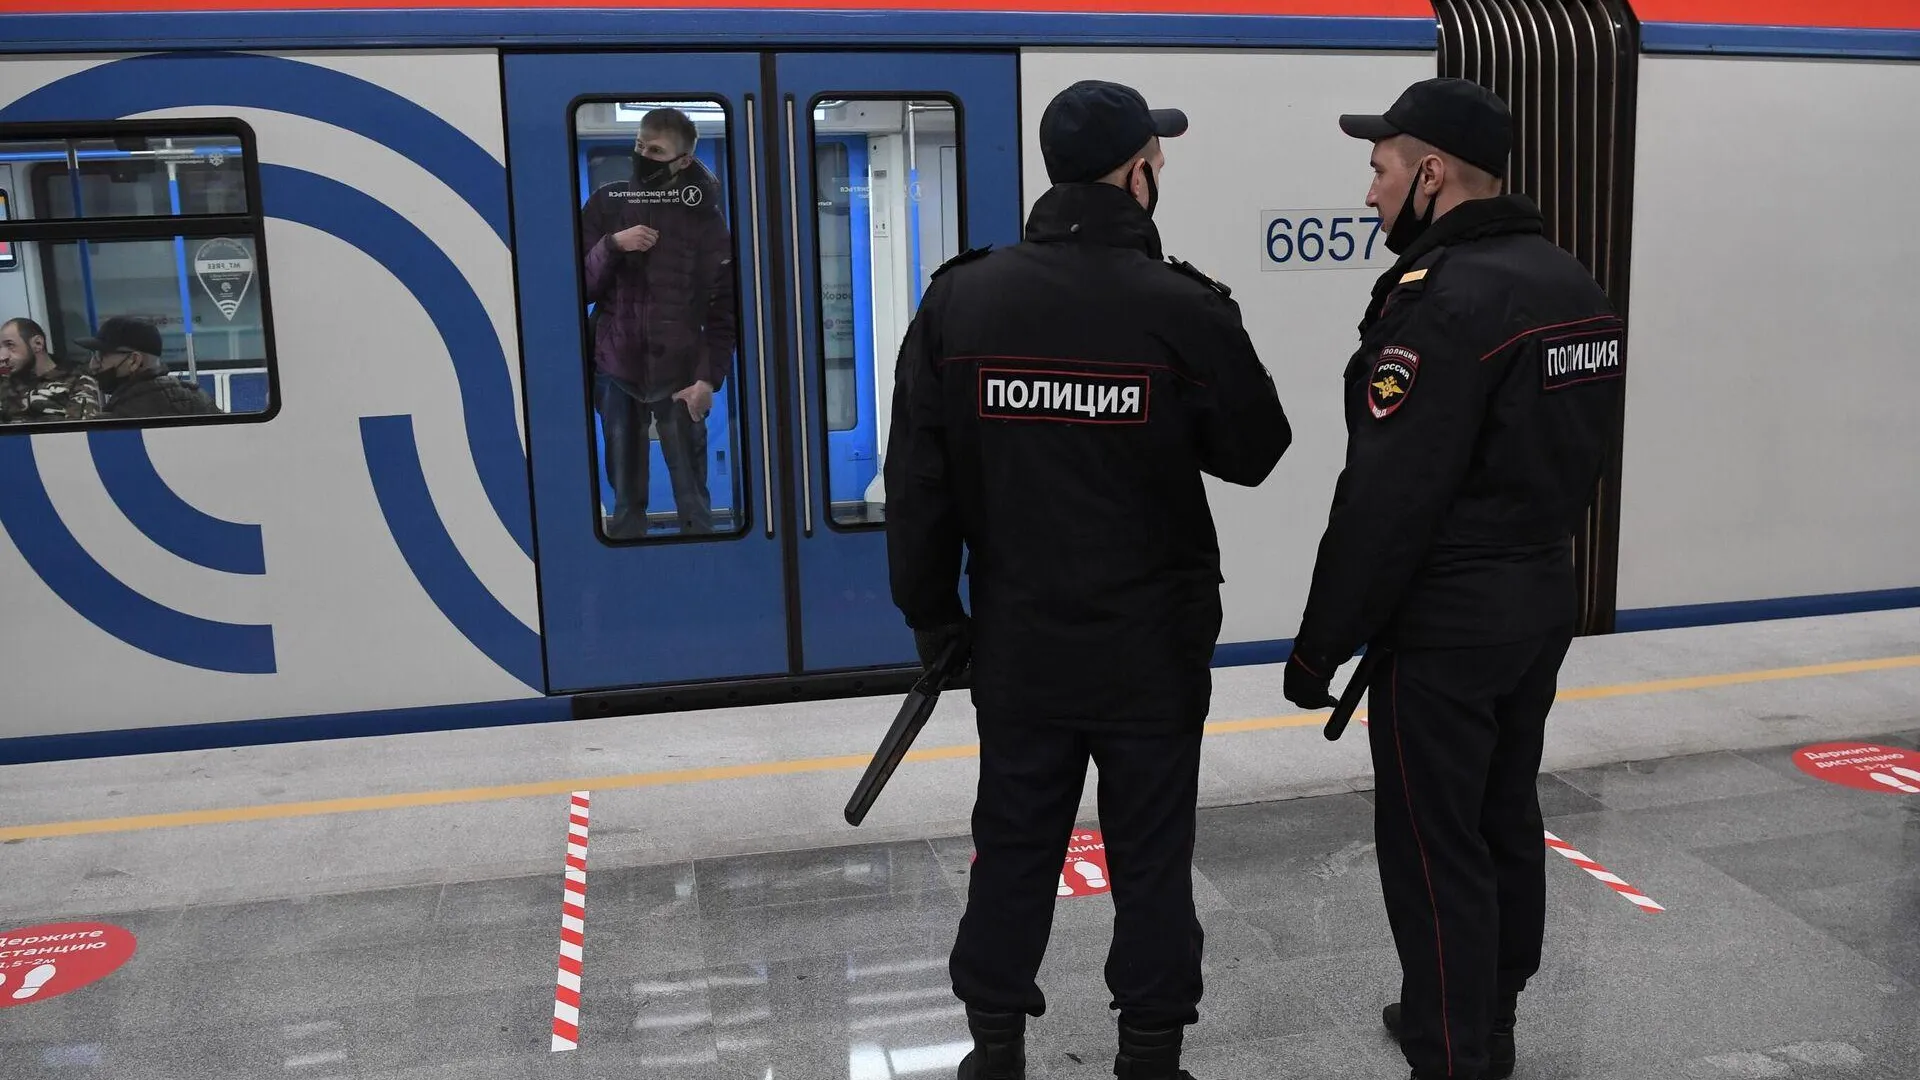 Шесть молодых людей арестовали и оштрафовали за стриптиз в московском метро